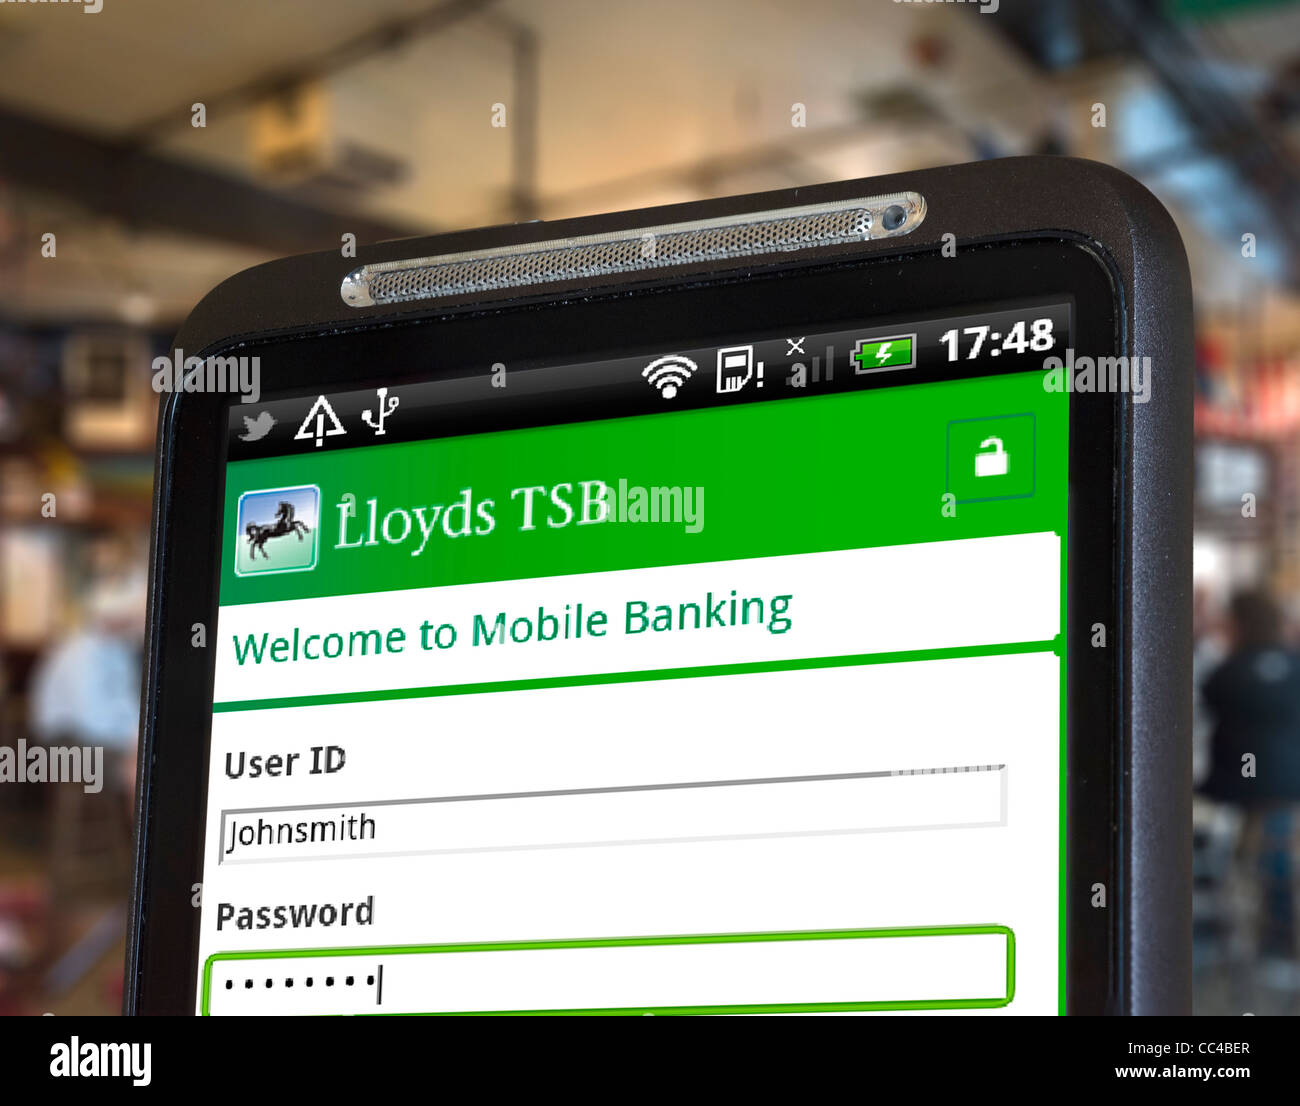 Connexion à internet mobile banking avec la Lloyds TSB app sur un smartphone HTC Banque D'Images